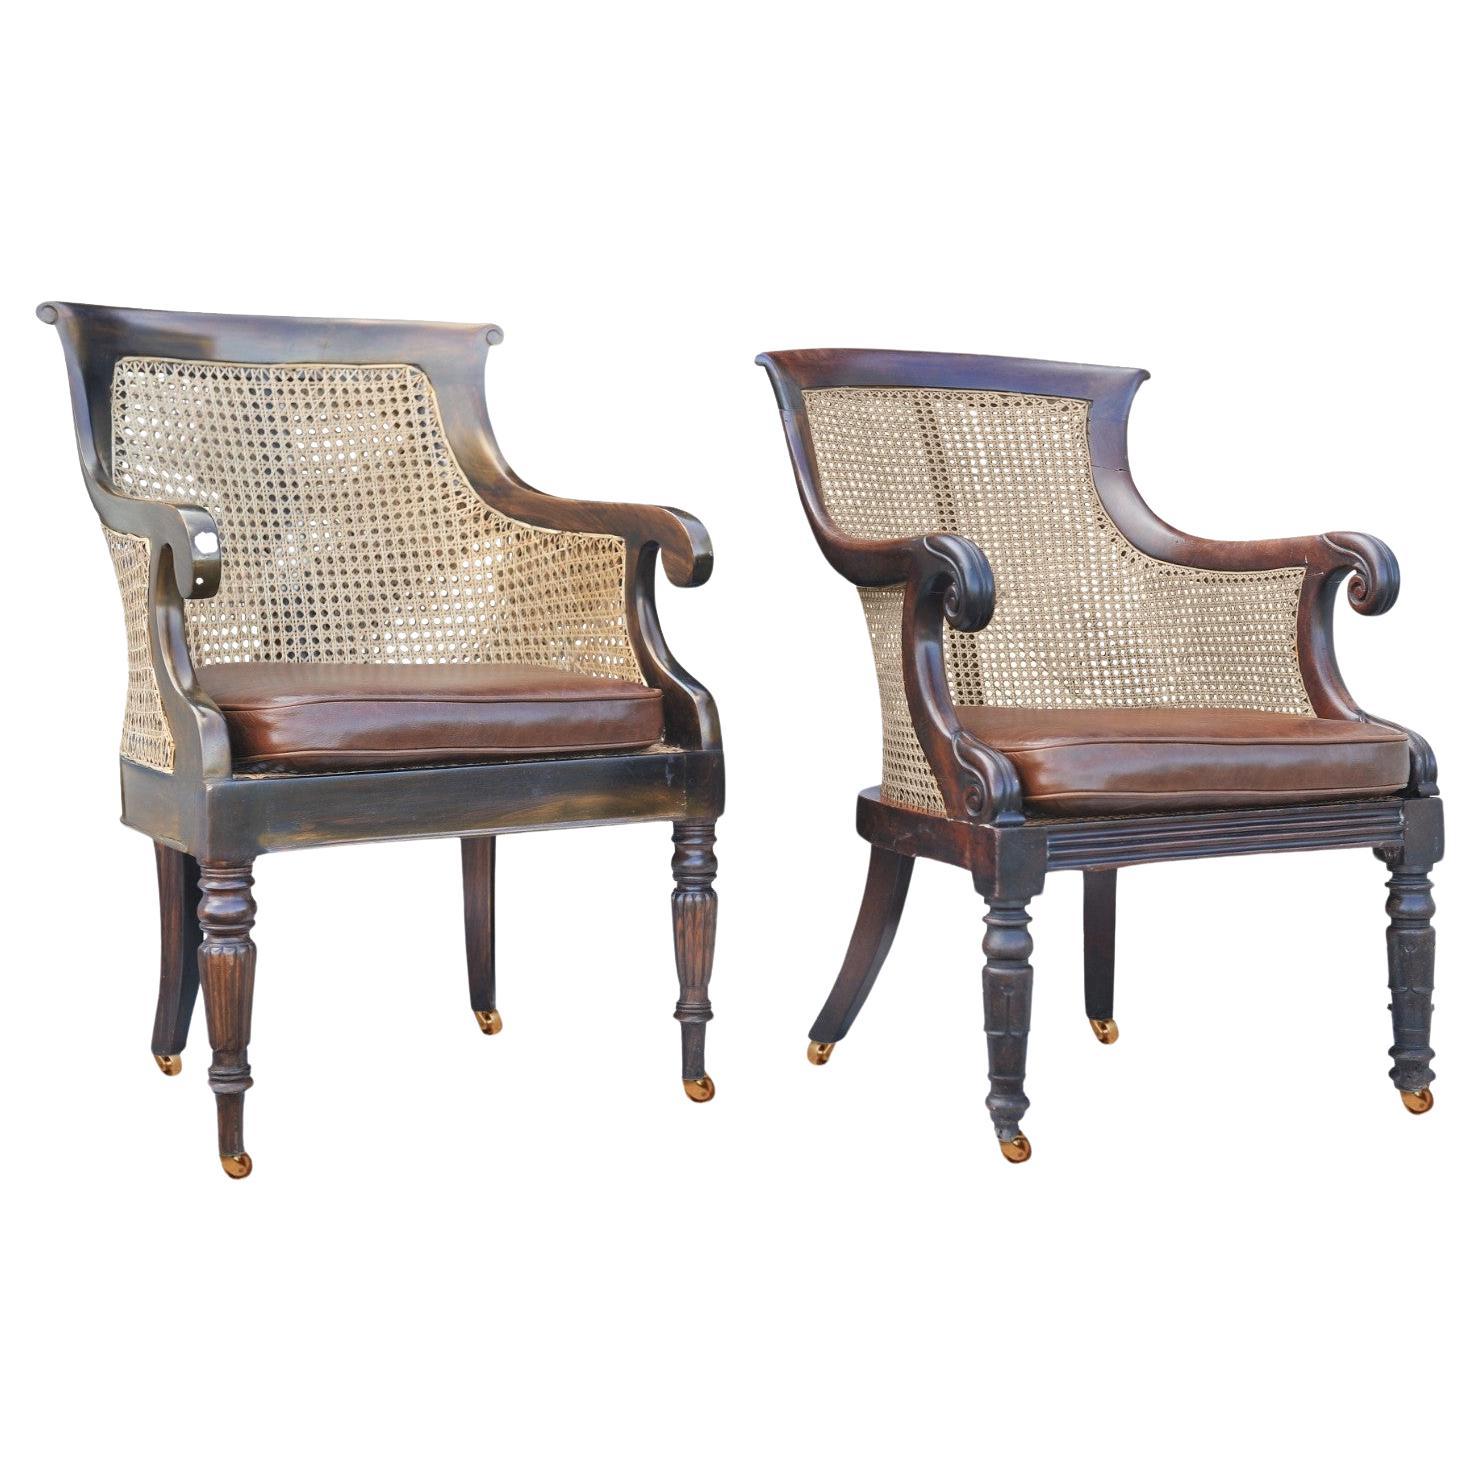 Elegante paire de fauteuils de bibliothèque William IV Regency en bois dur Cane Bergere et cuir marron antique avec accoudoirs à volutes sur roulettes en laiton

Les chaises sont une paire proche, légèrement différentes mais non assorties.

La canne